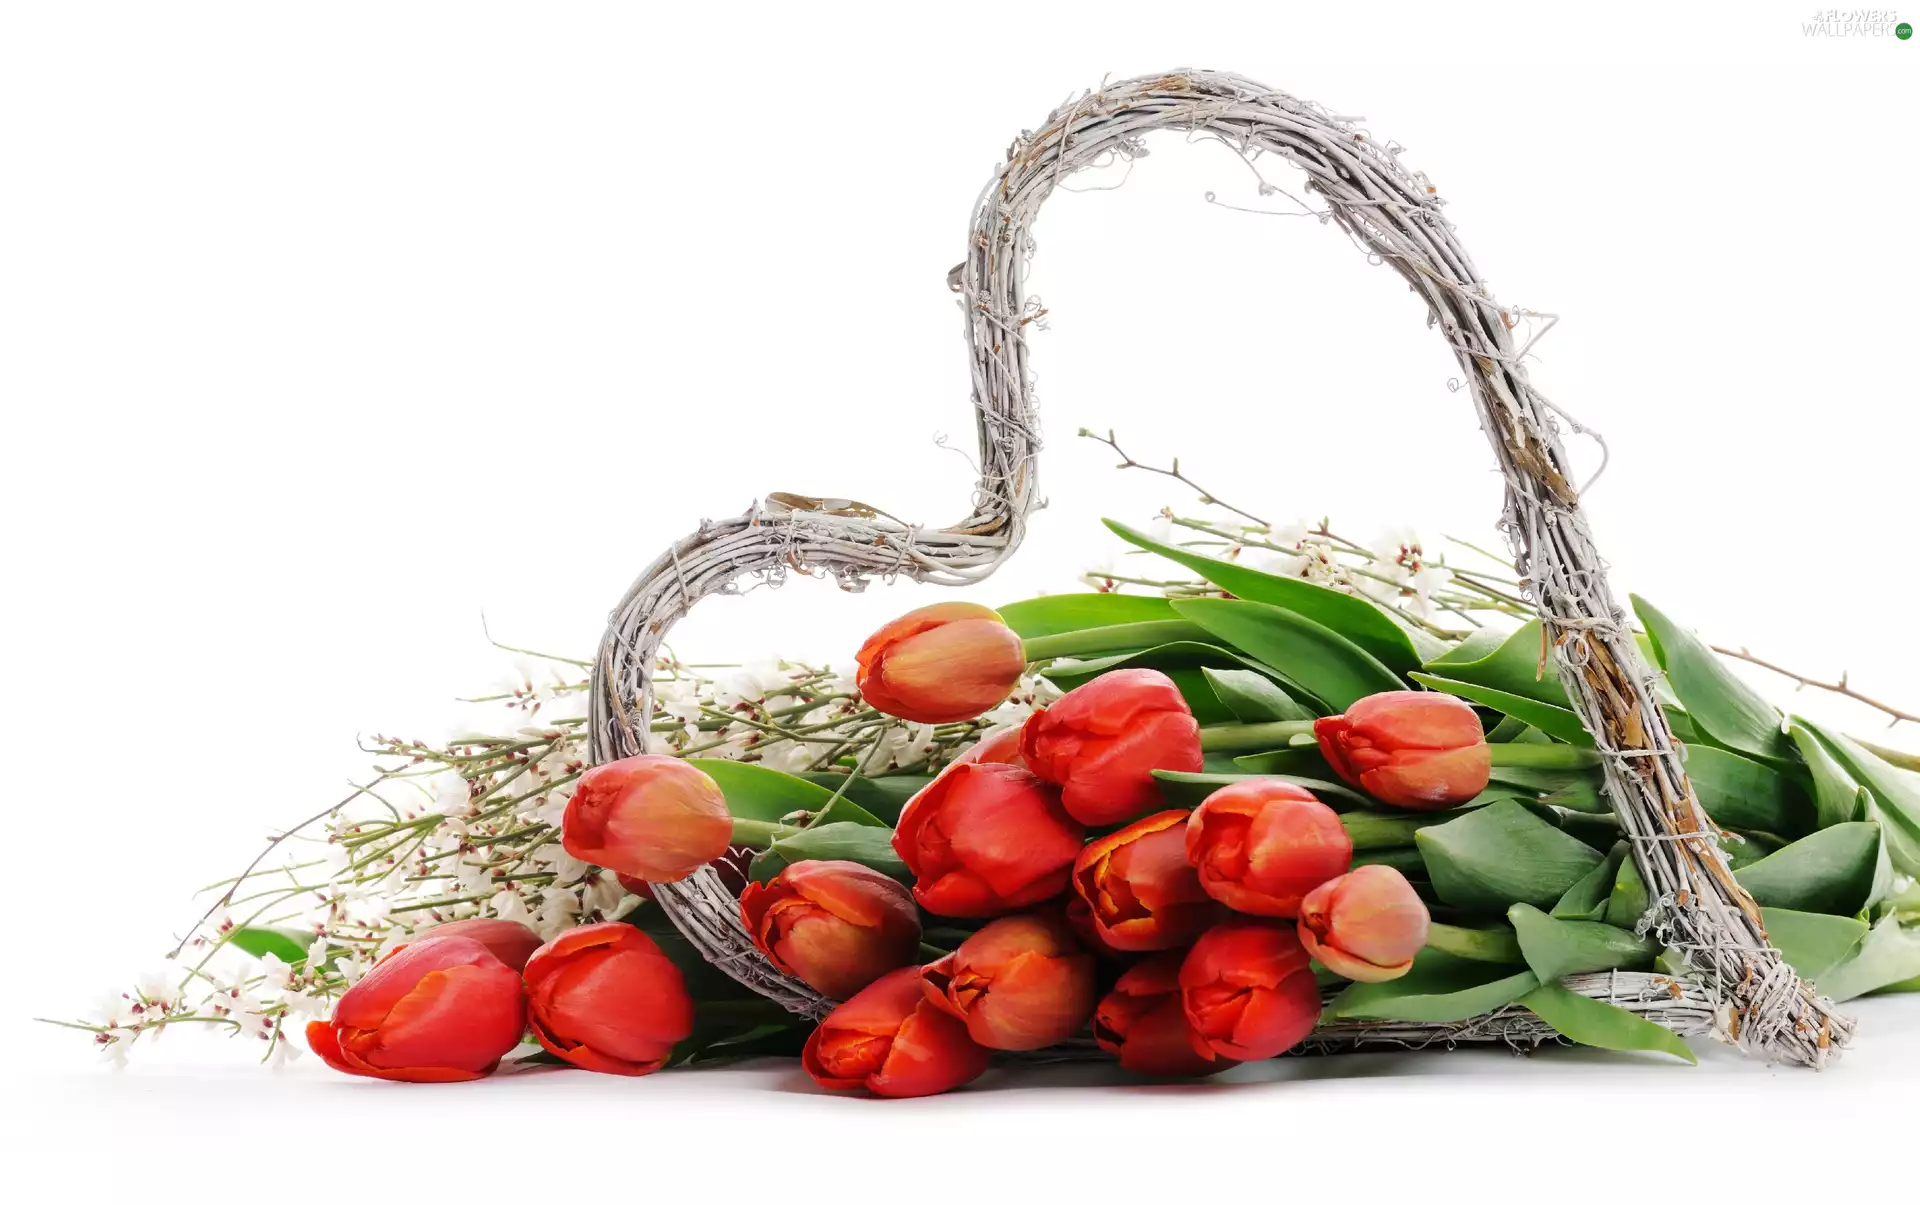 Heart, Tulips, wicker